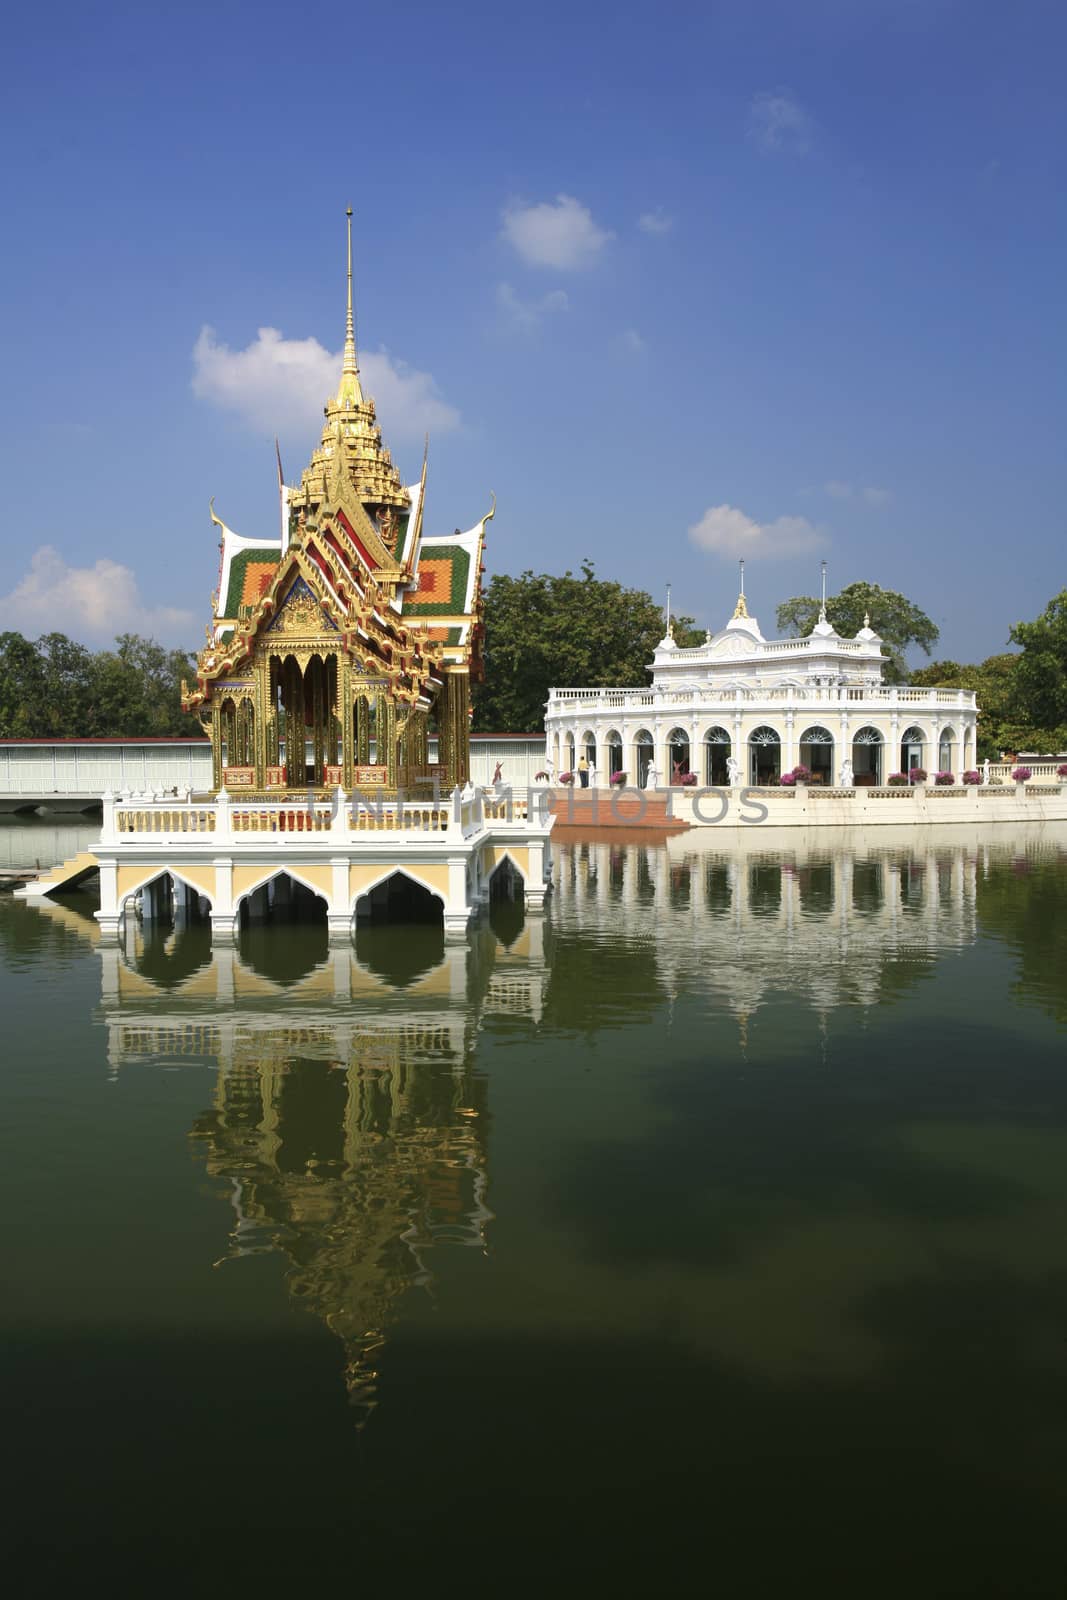 Bang Pa-In Royal Palace - Ayutthaya, Thailand by think4photop